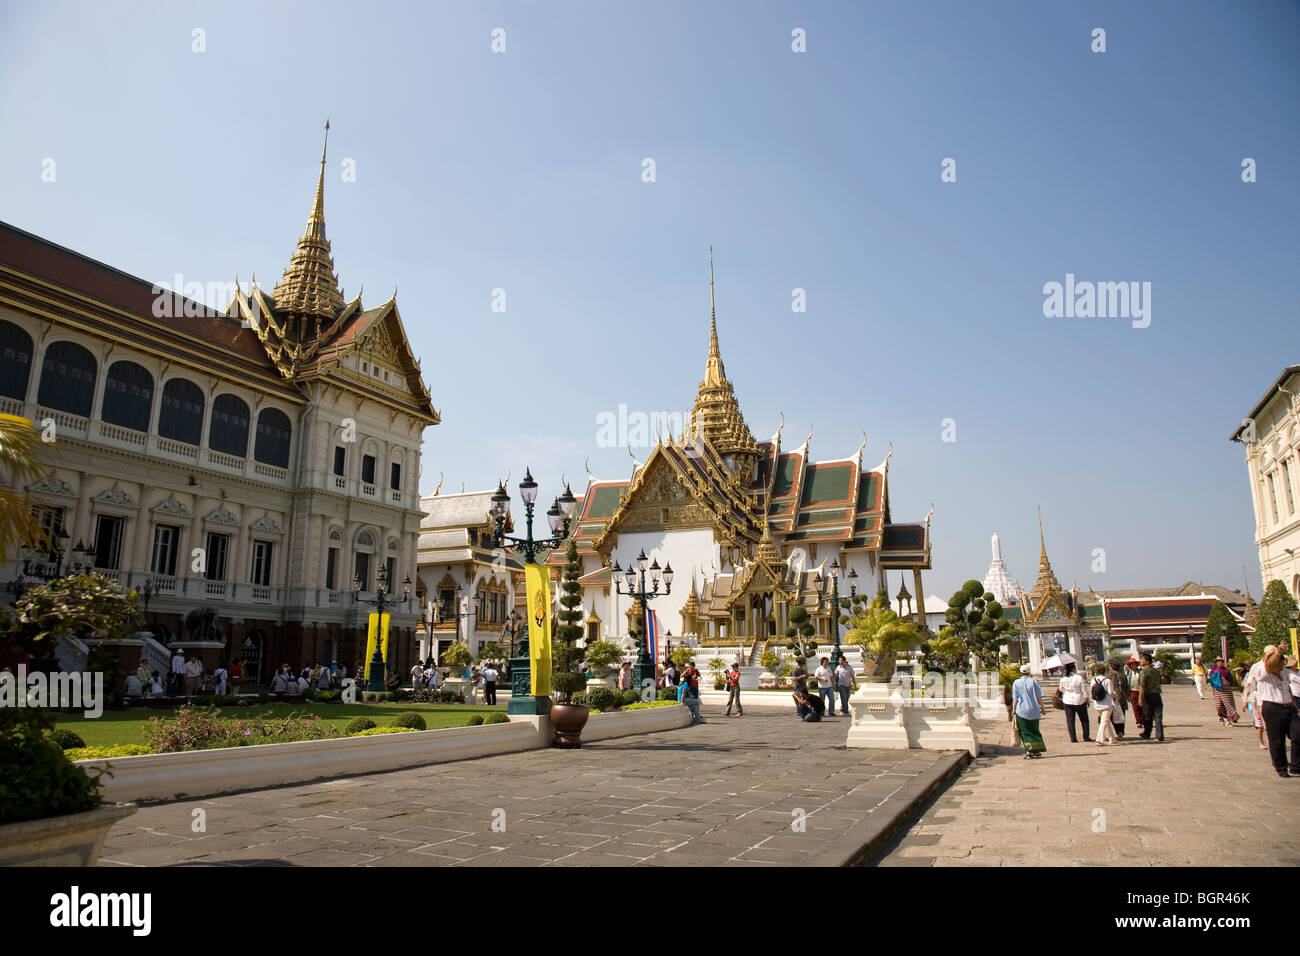 Grand Palace in Bangkok, Thailand Stock Photo